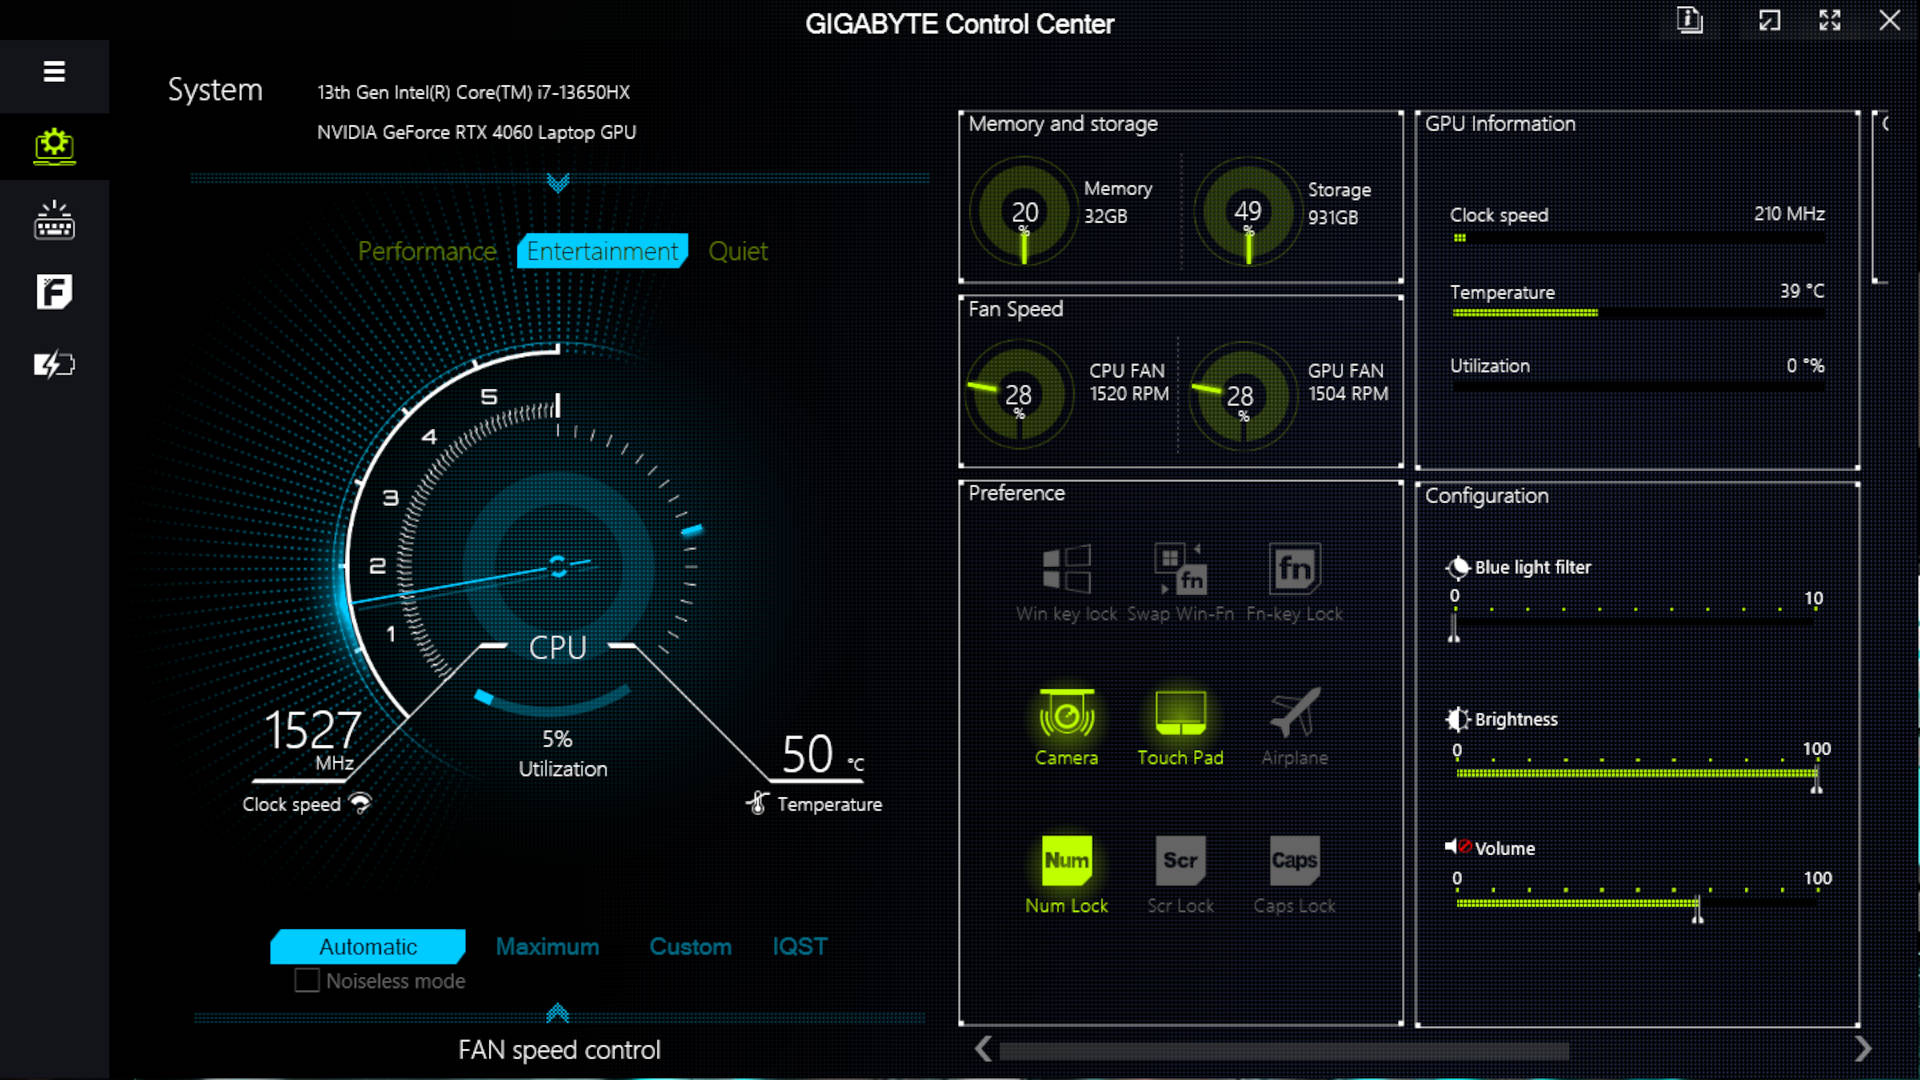 Gigabyte Control Center app